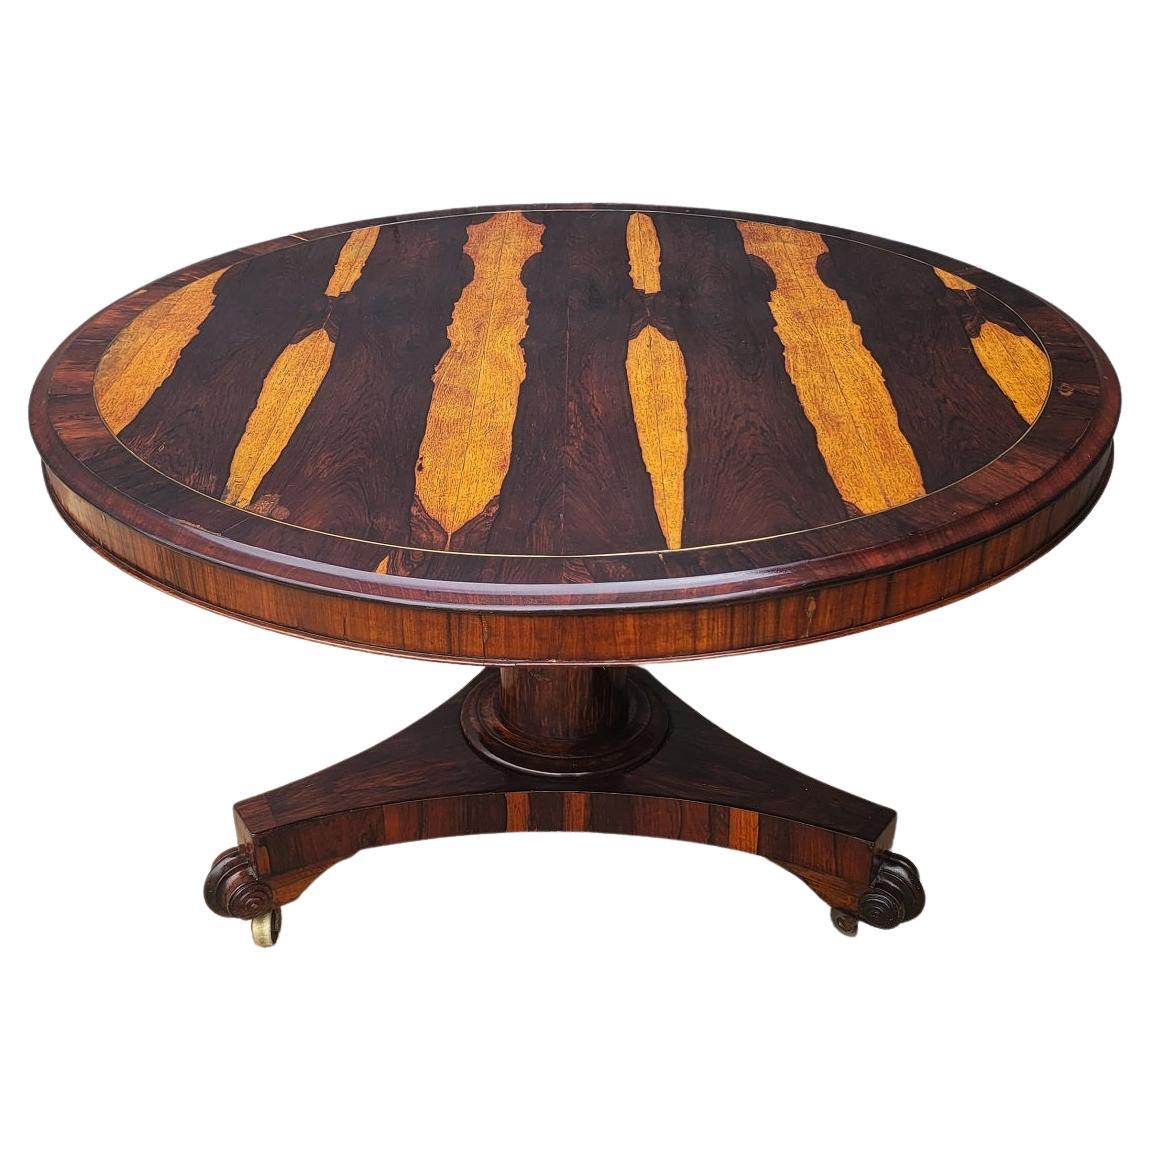 Table centrale à plateau basculant de style Régence britannique avec placages exceptionnels